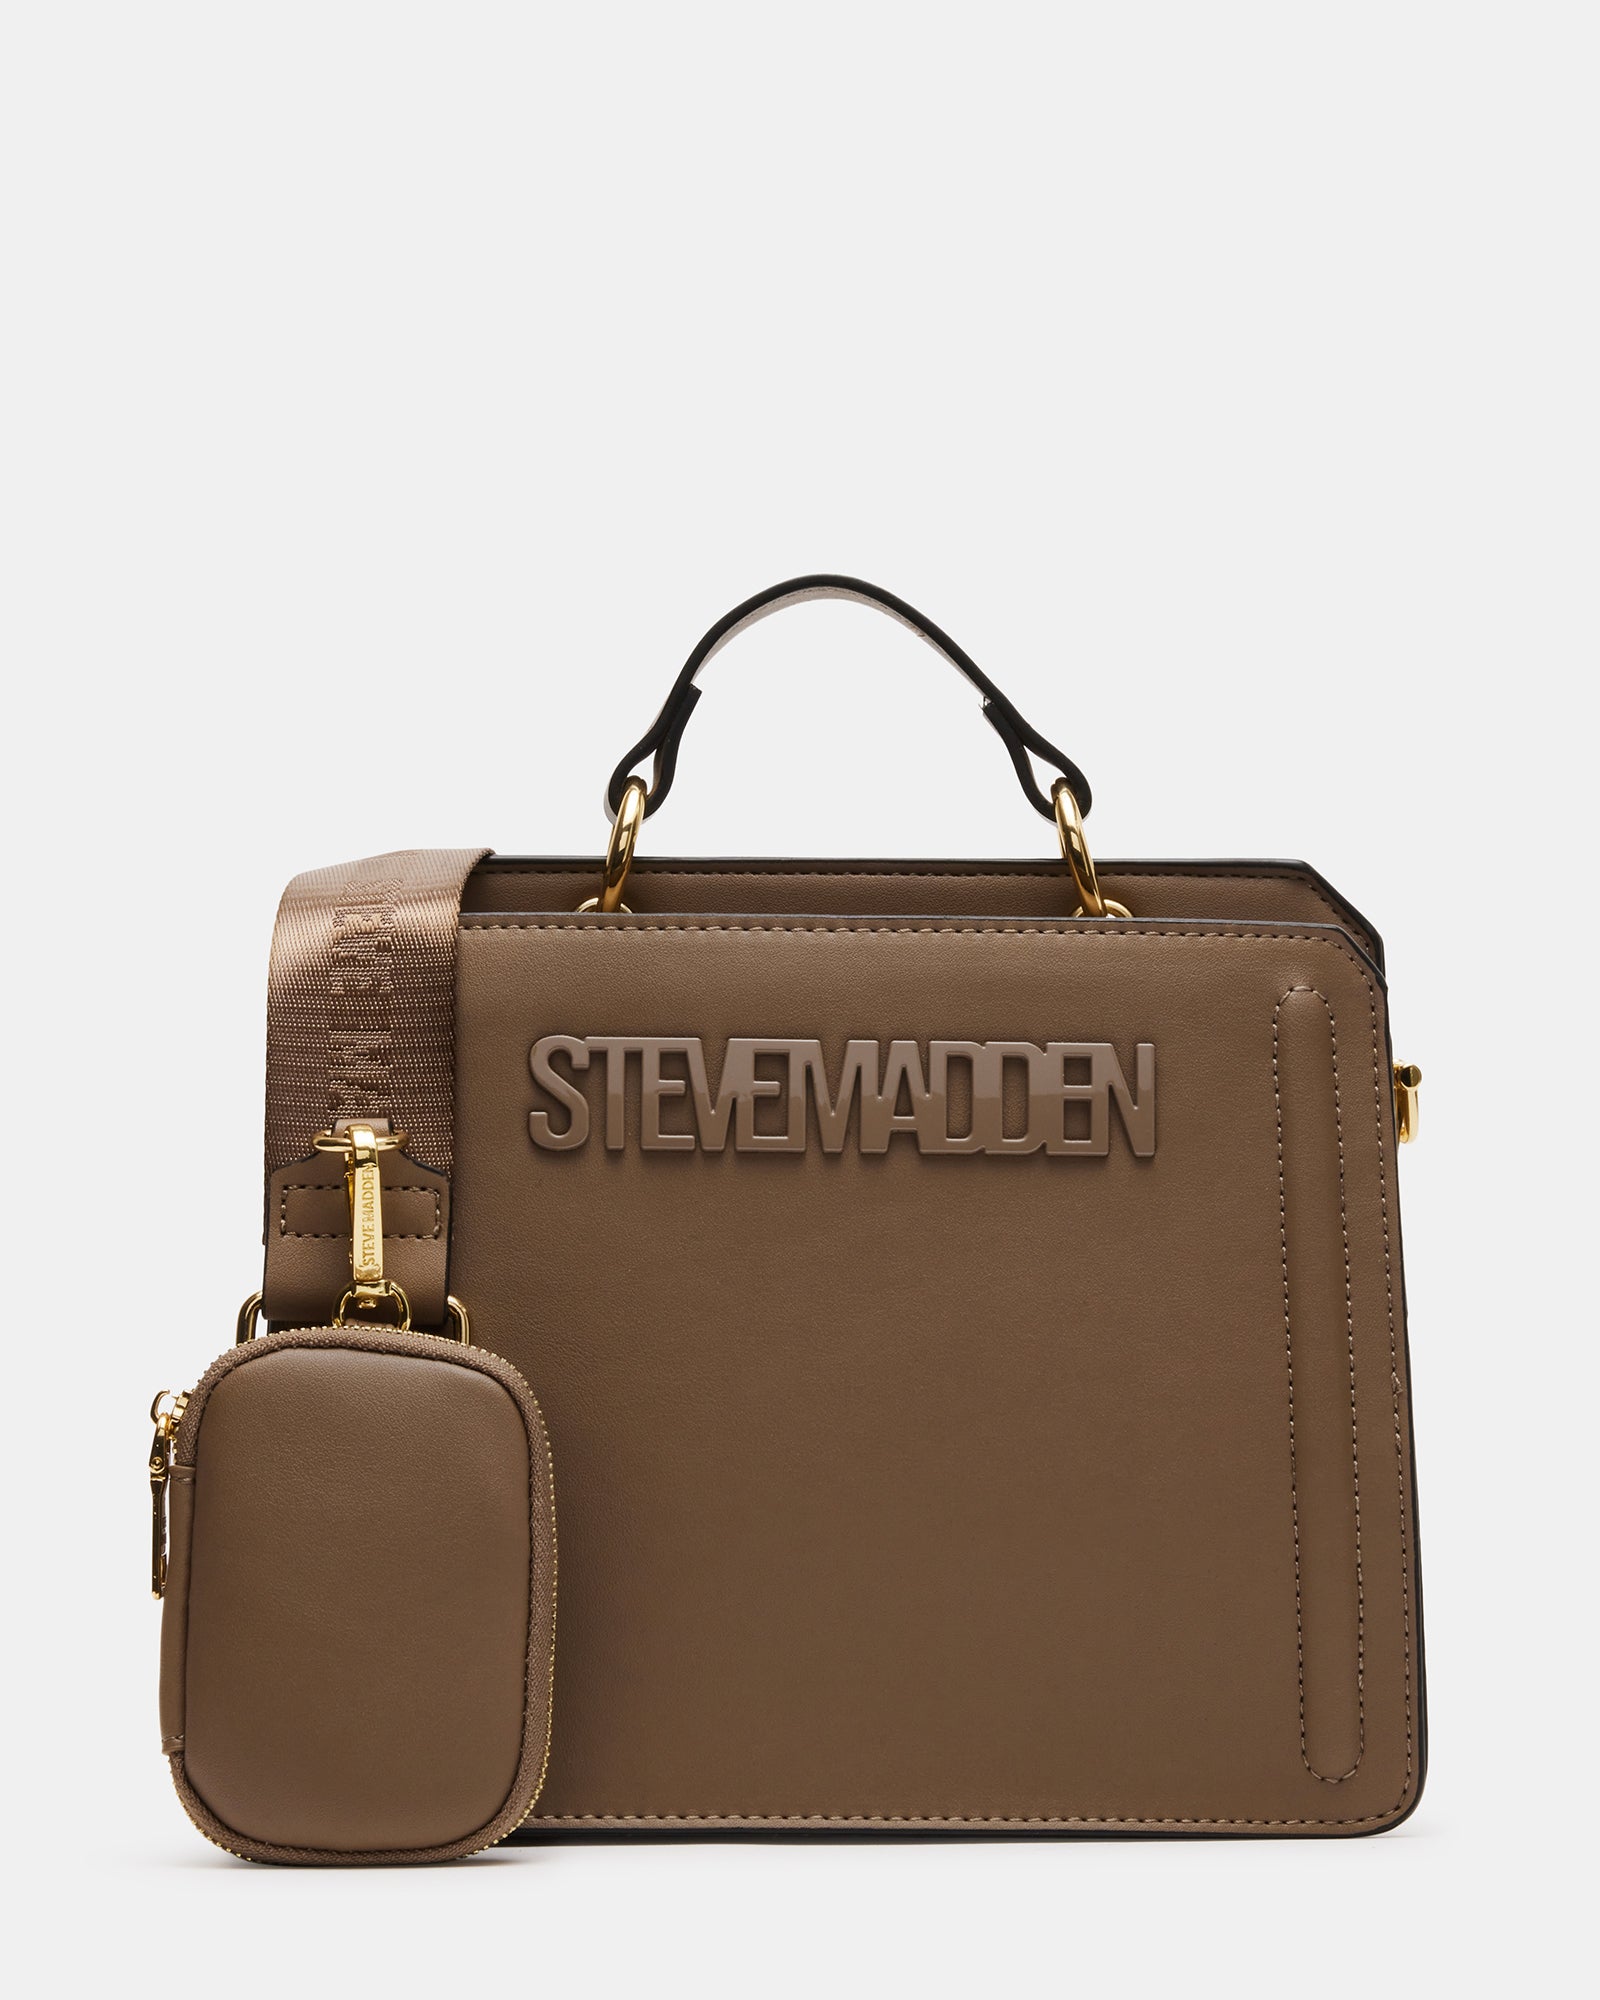 Steve Madden Bags | Steve Madden Fuschia Bevelyn Crossbody Bag | Color: Pink | Size: Os | Jenromero123's Closet